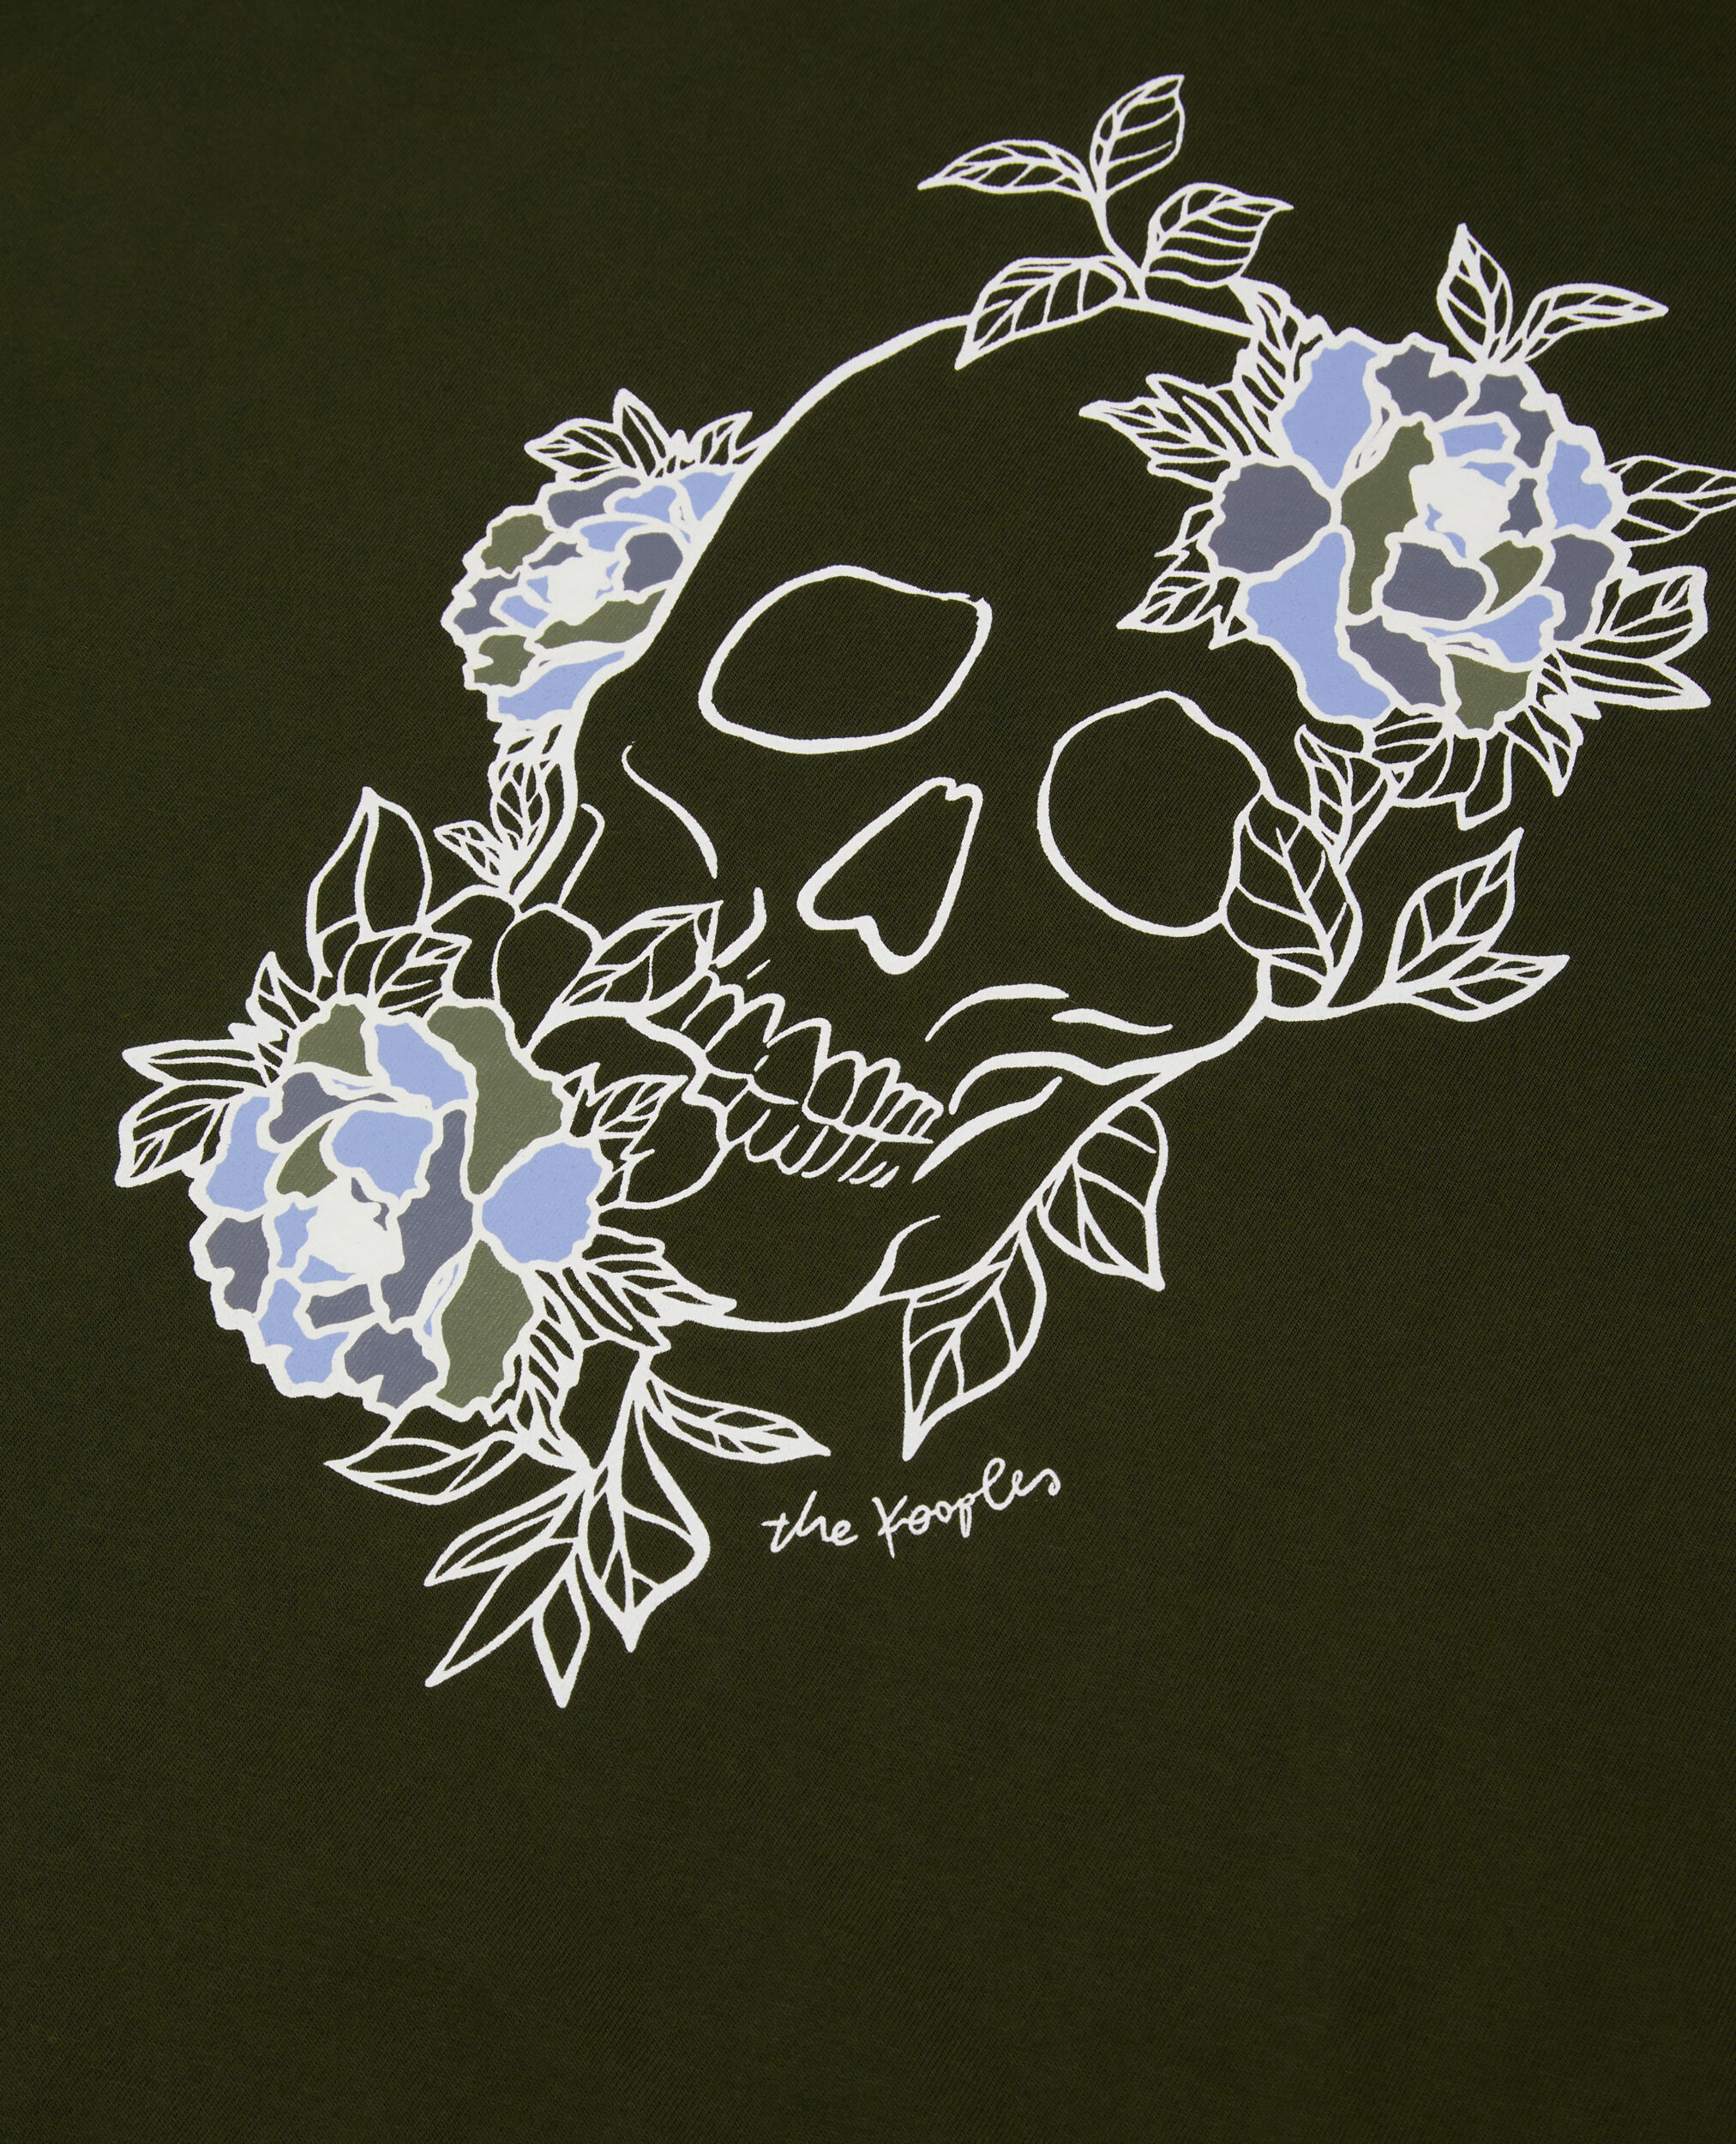 T-shirt Homme kaki avec sérigraphie Flower skull, DARK GREEN, hi-res image number null